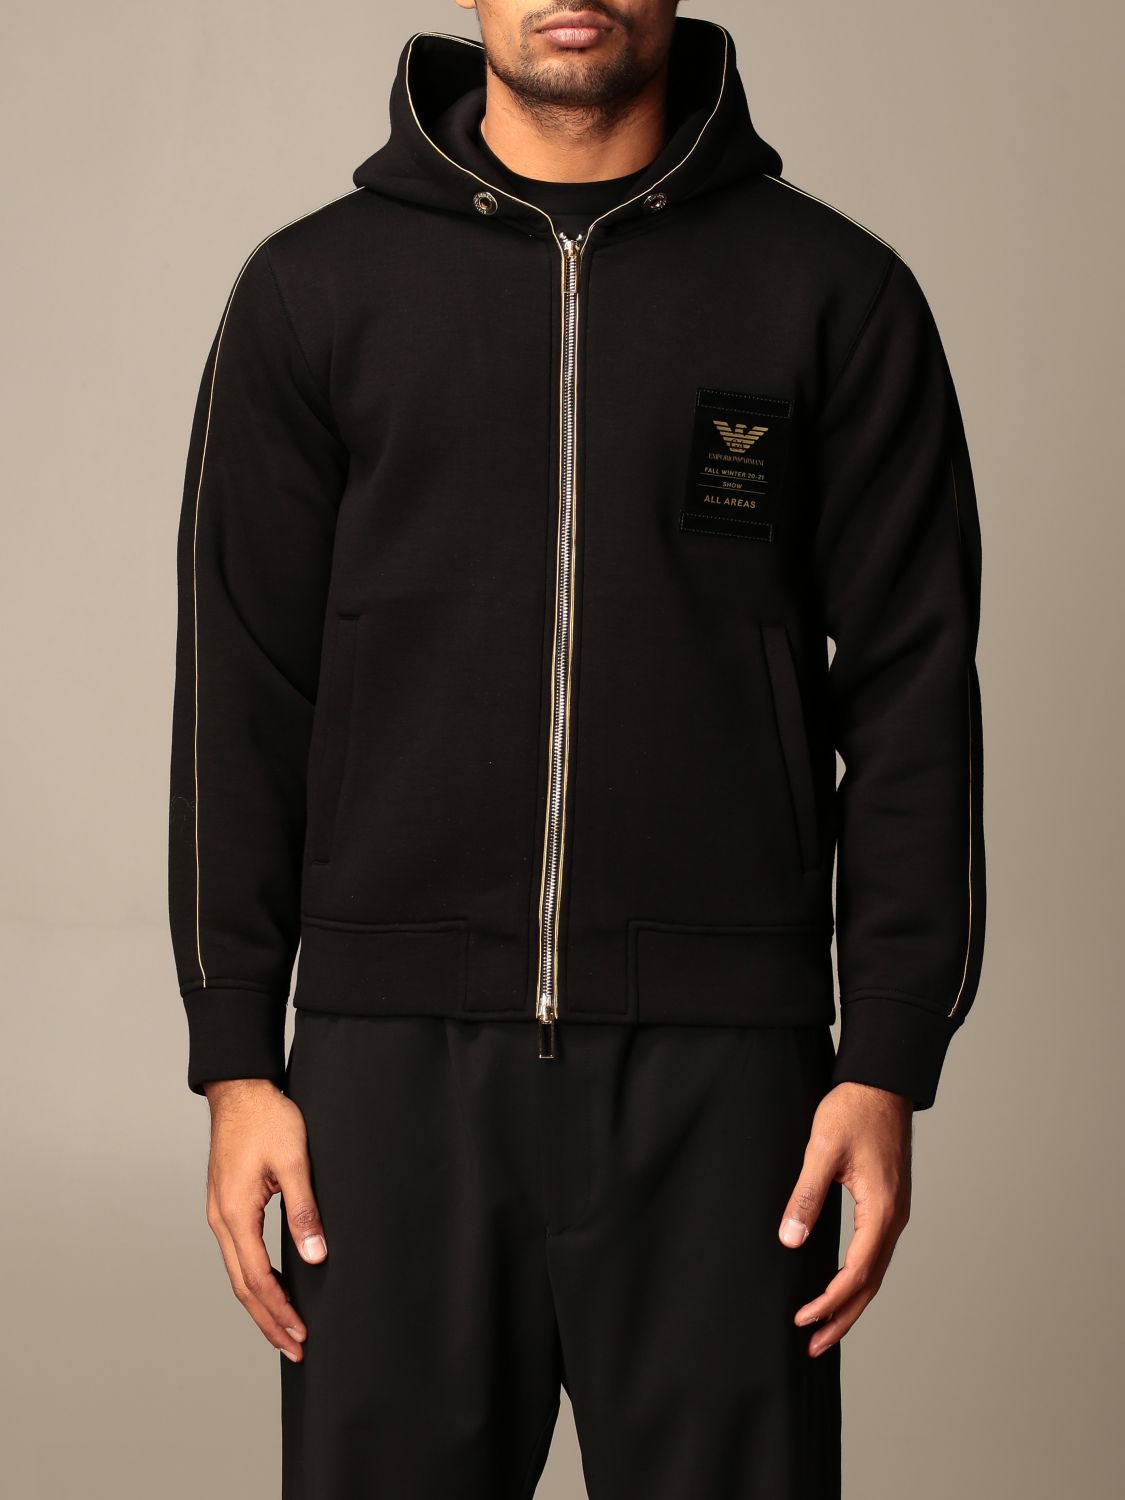 EMPORIO ARMANI: hooded sweatshirt with zip - Black | Emporio Armani  sweatshirt 6H1MQ7 1JDSZ online on 